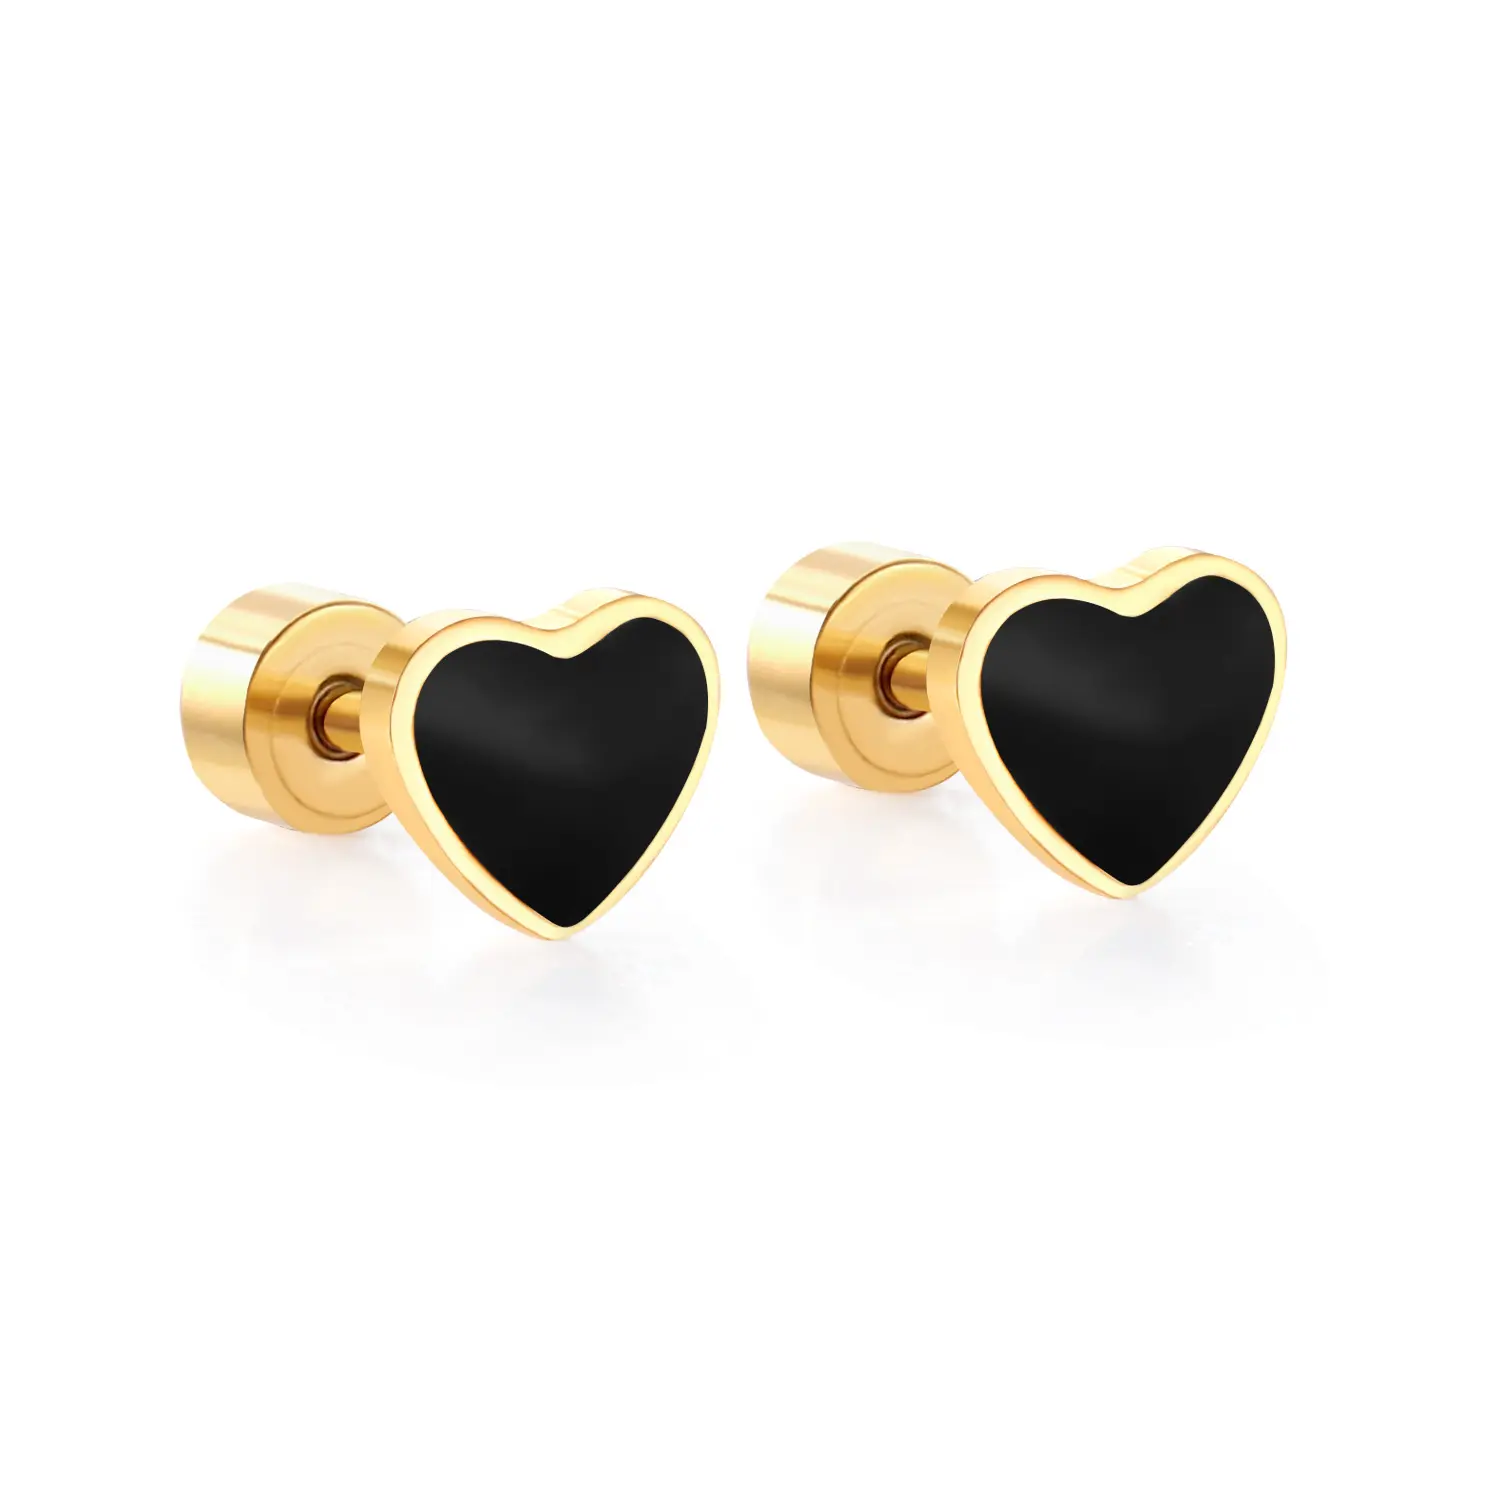 18K Gold Plated Stainless Steel Jewelry Cute Heart Shape Jewelry Screw Plug Stud Earrings